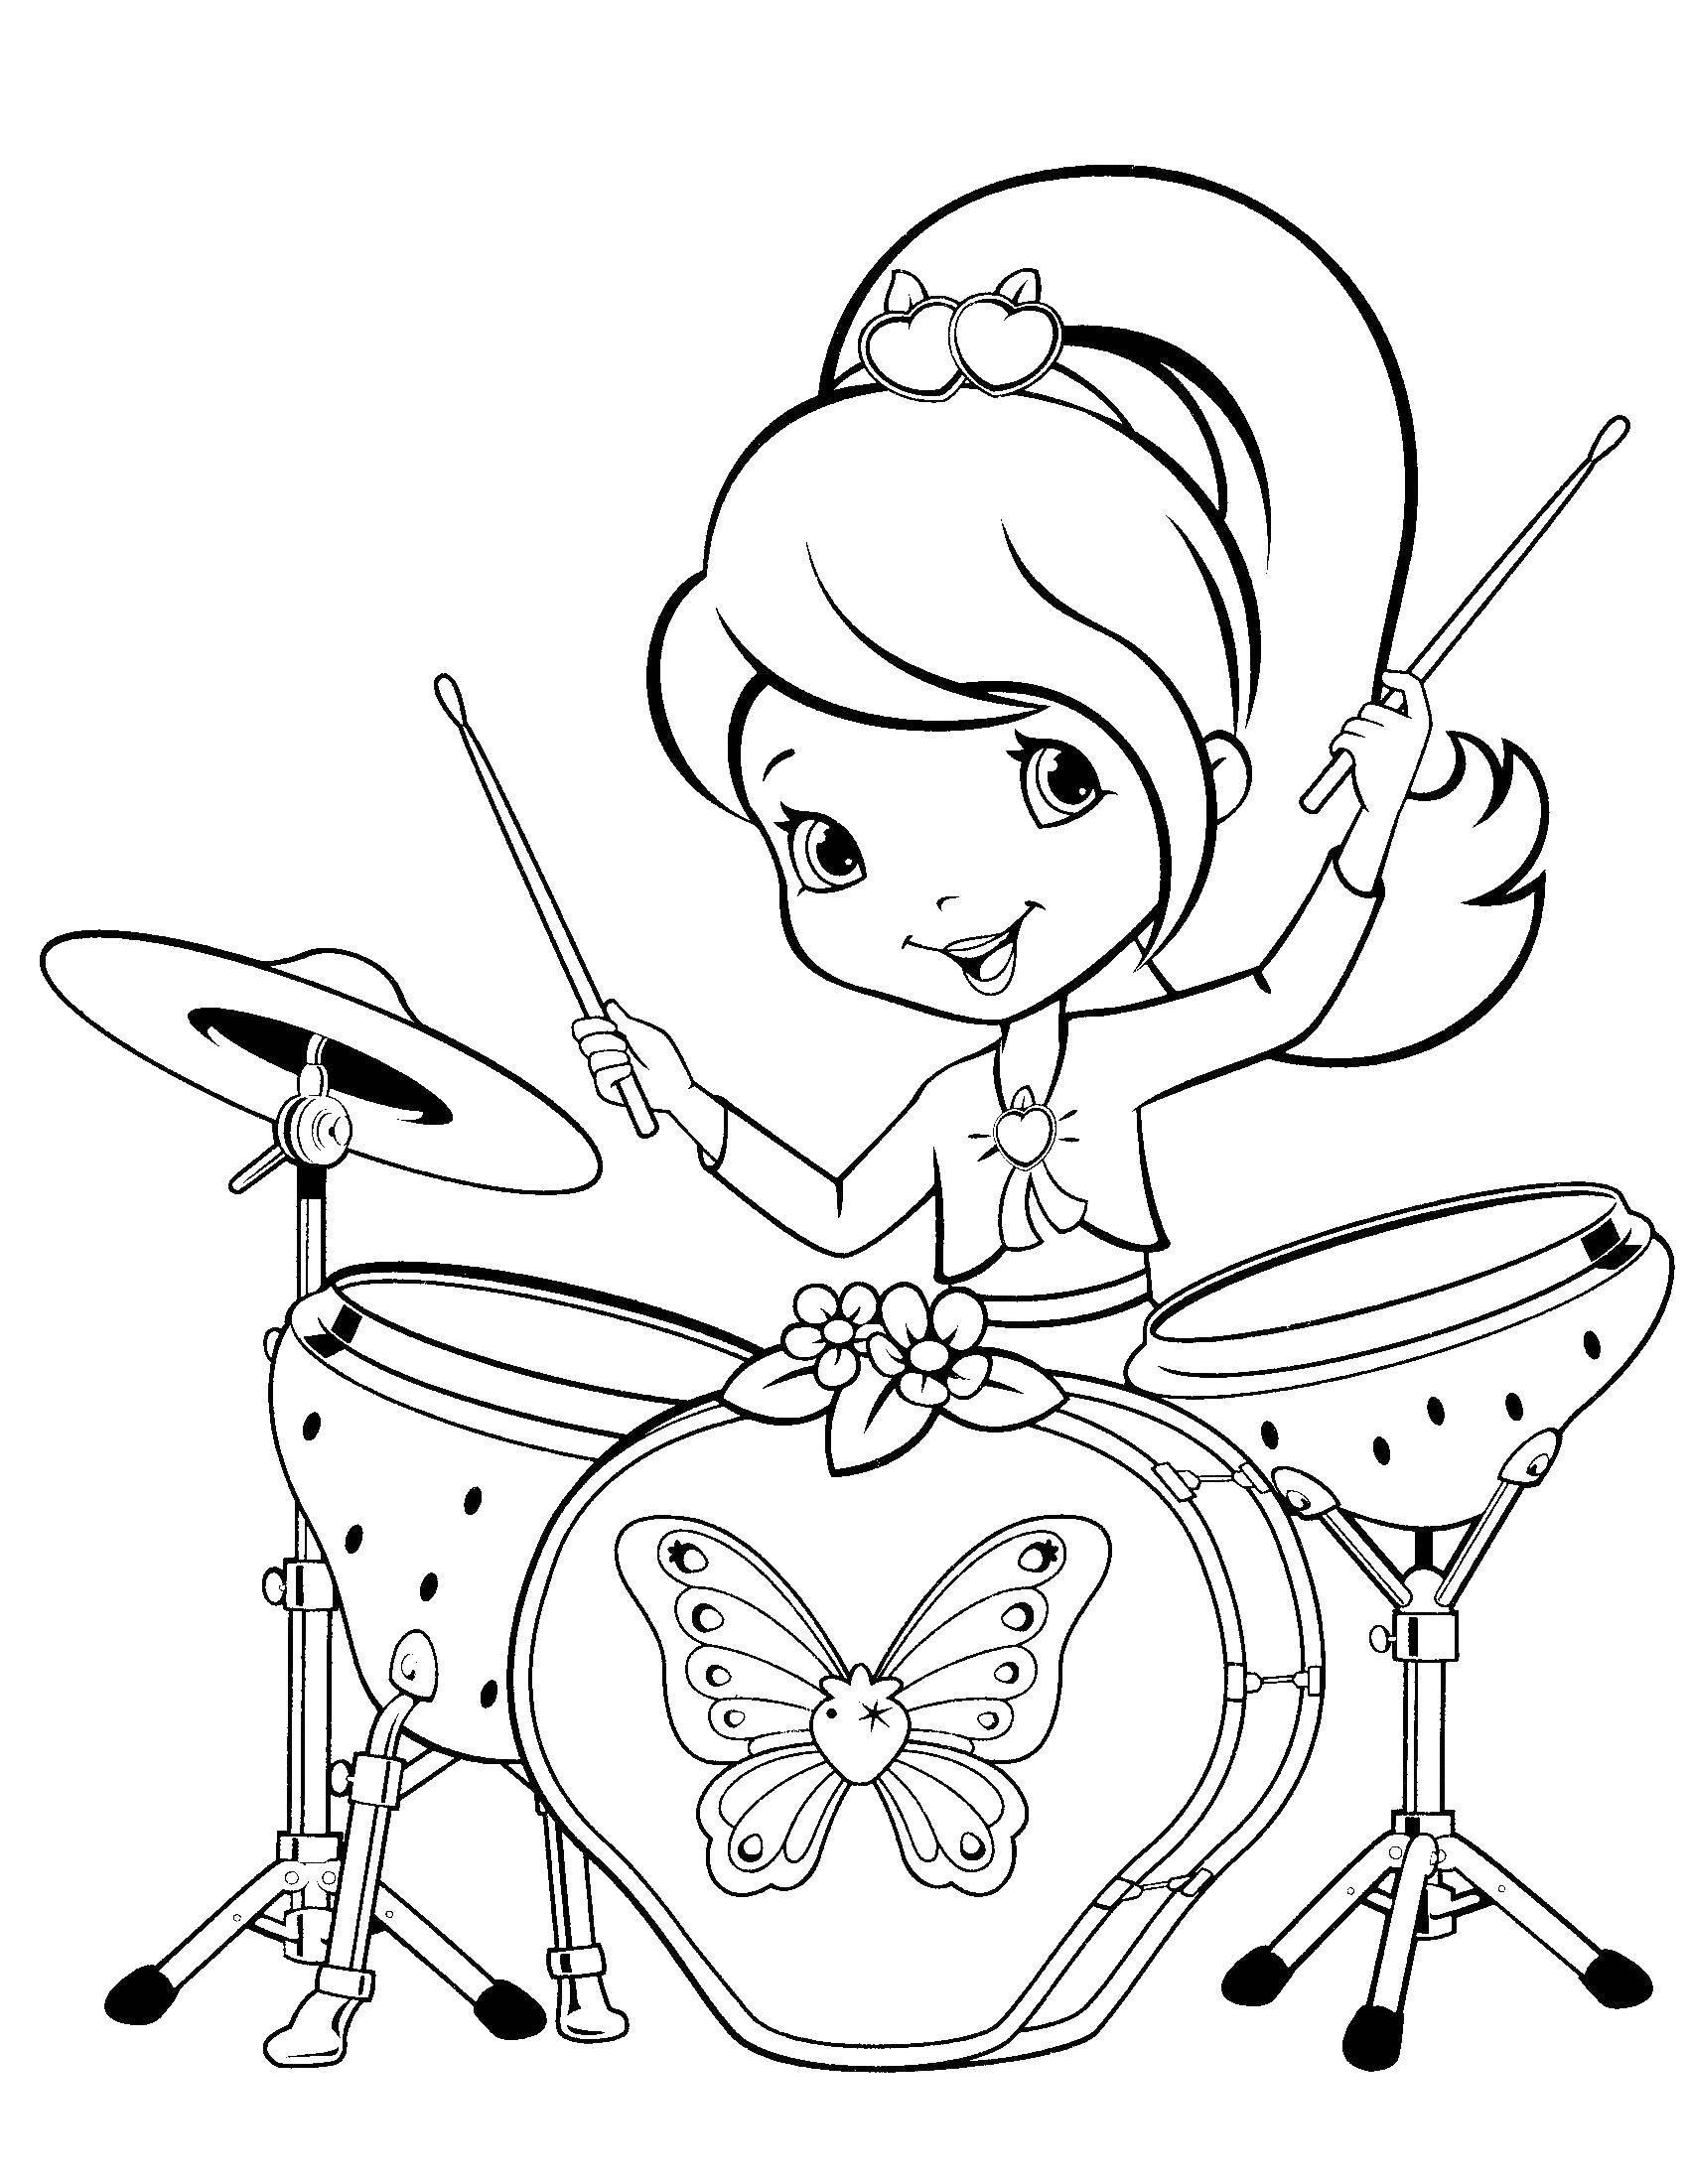 Название: Раскраска Шарлотта земляничка играет на барабанах. Категория: шарлотта земляничка мультики. Теги: шарлотта, земляничка, мультики.